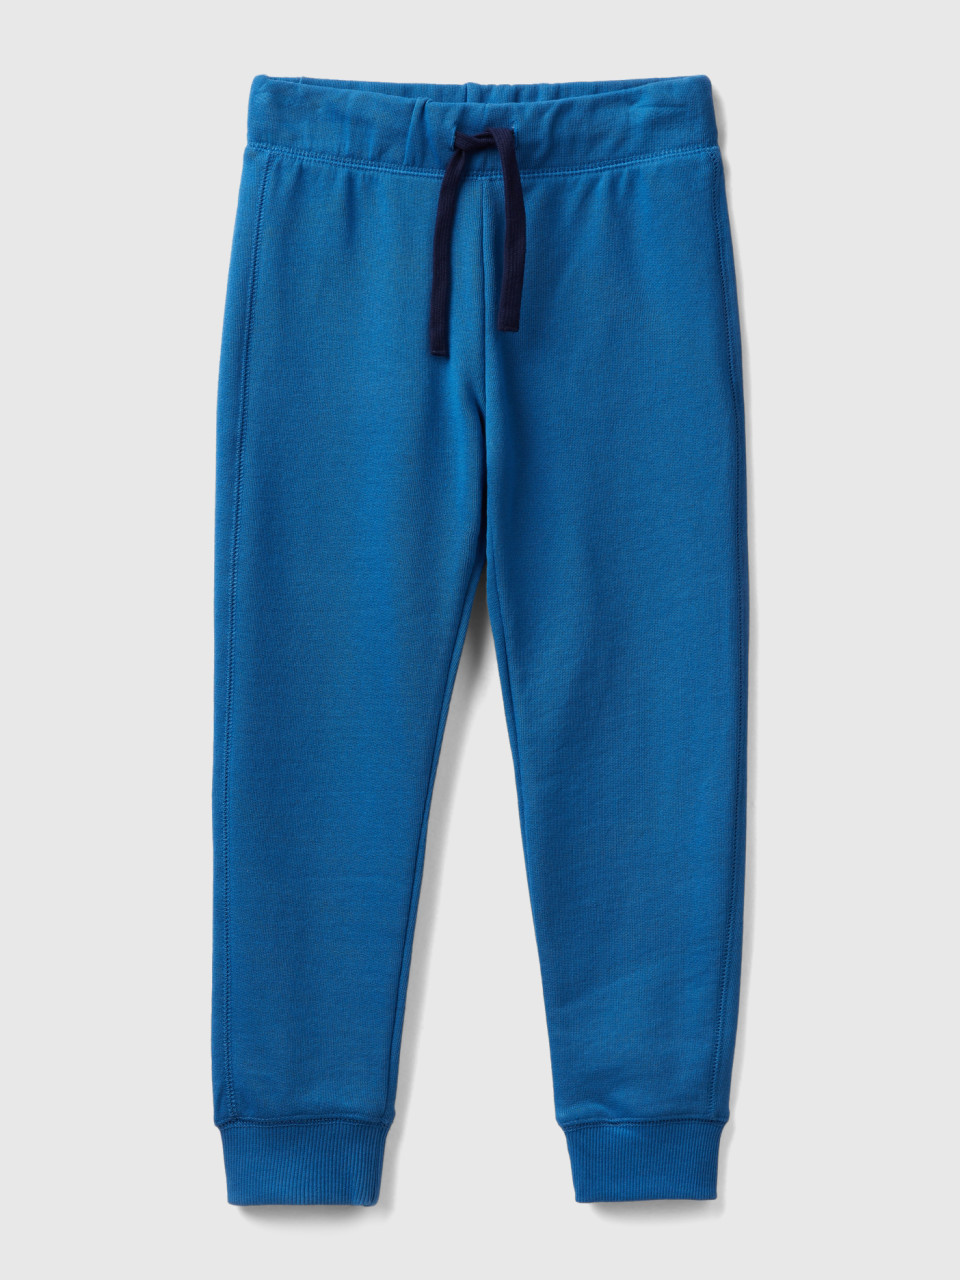 Benetton, 100% Cotton Sweatpants, Blue, Kids